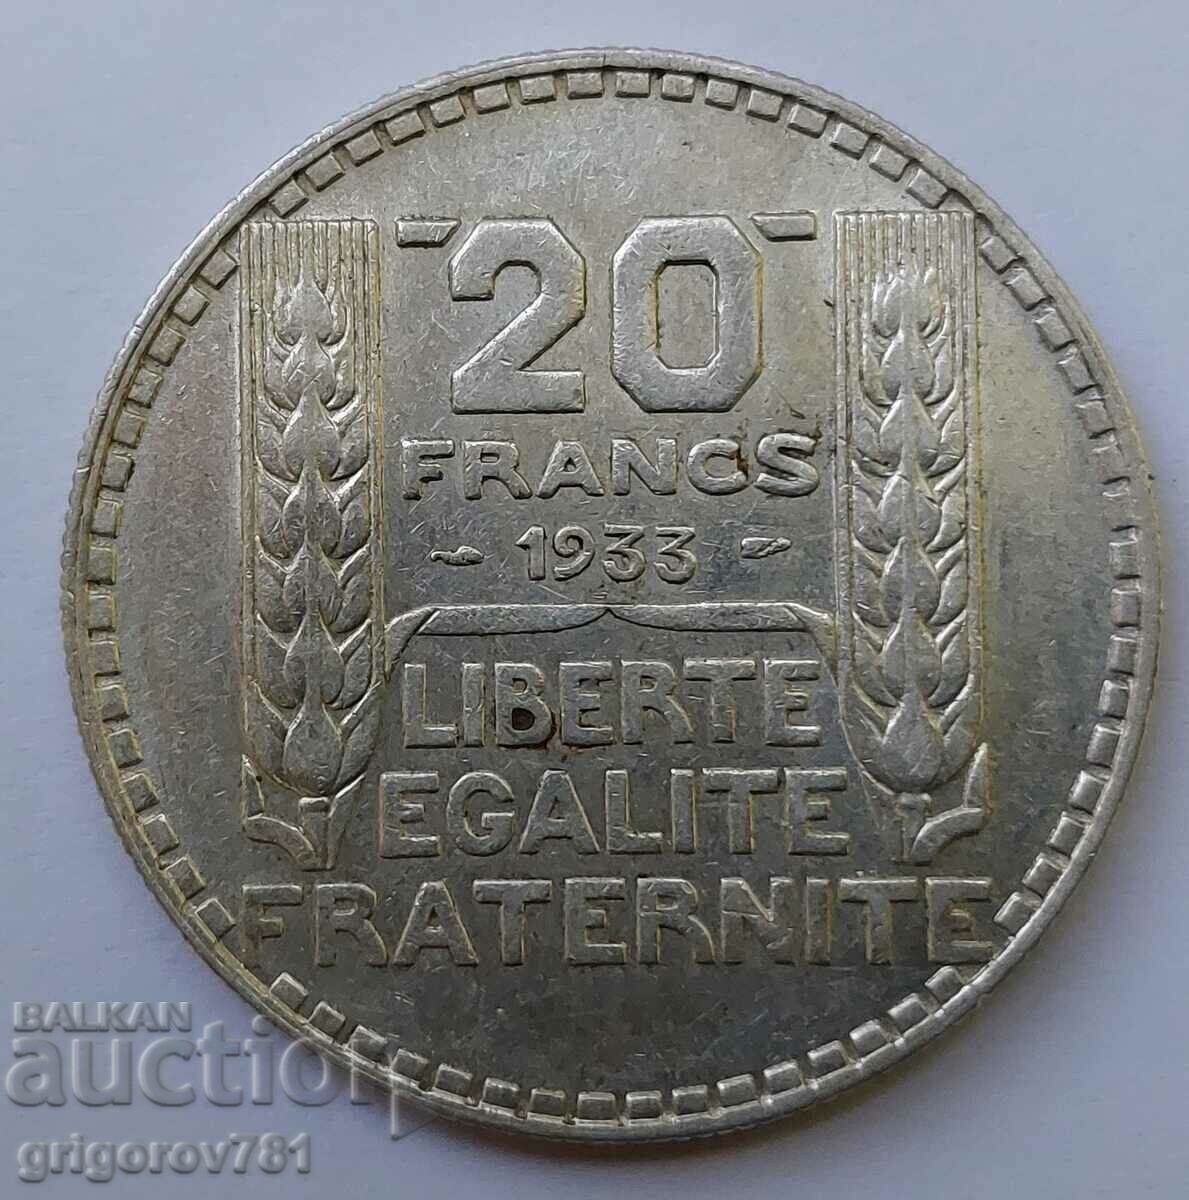 20 Franci Argint Franta 1933 - Moneda de argint #27